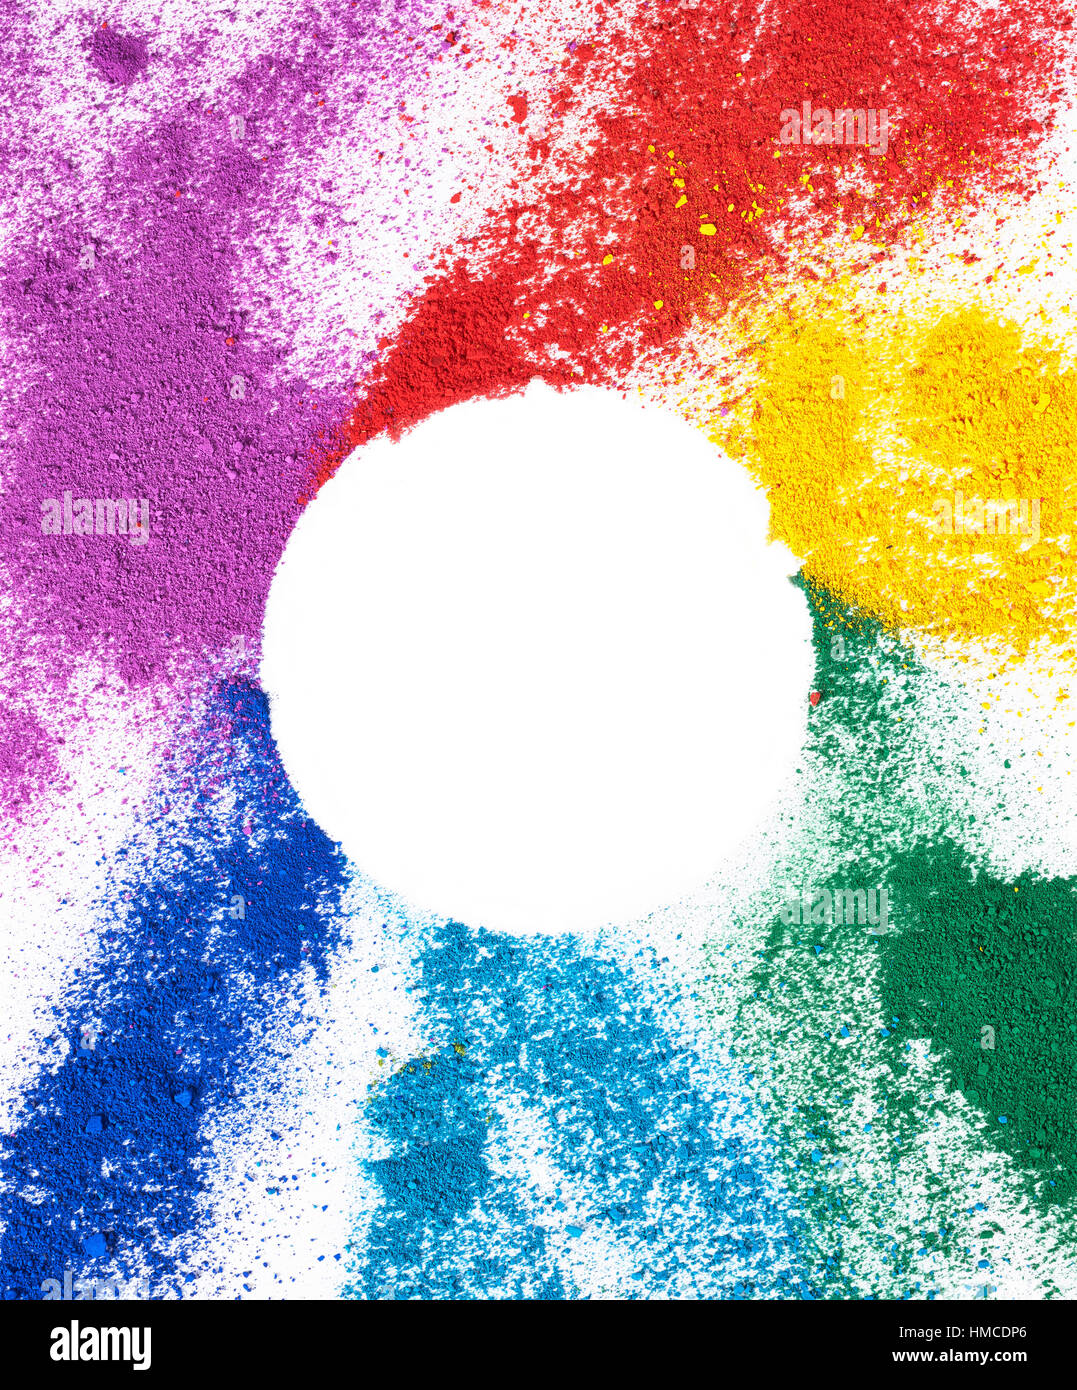 Polvos de colores brillantes sobre un fondo completamente blanco con un círculo blanco en el centro de la imagen. Foto de stock